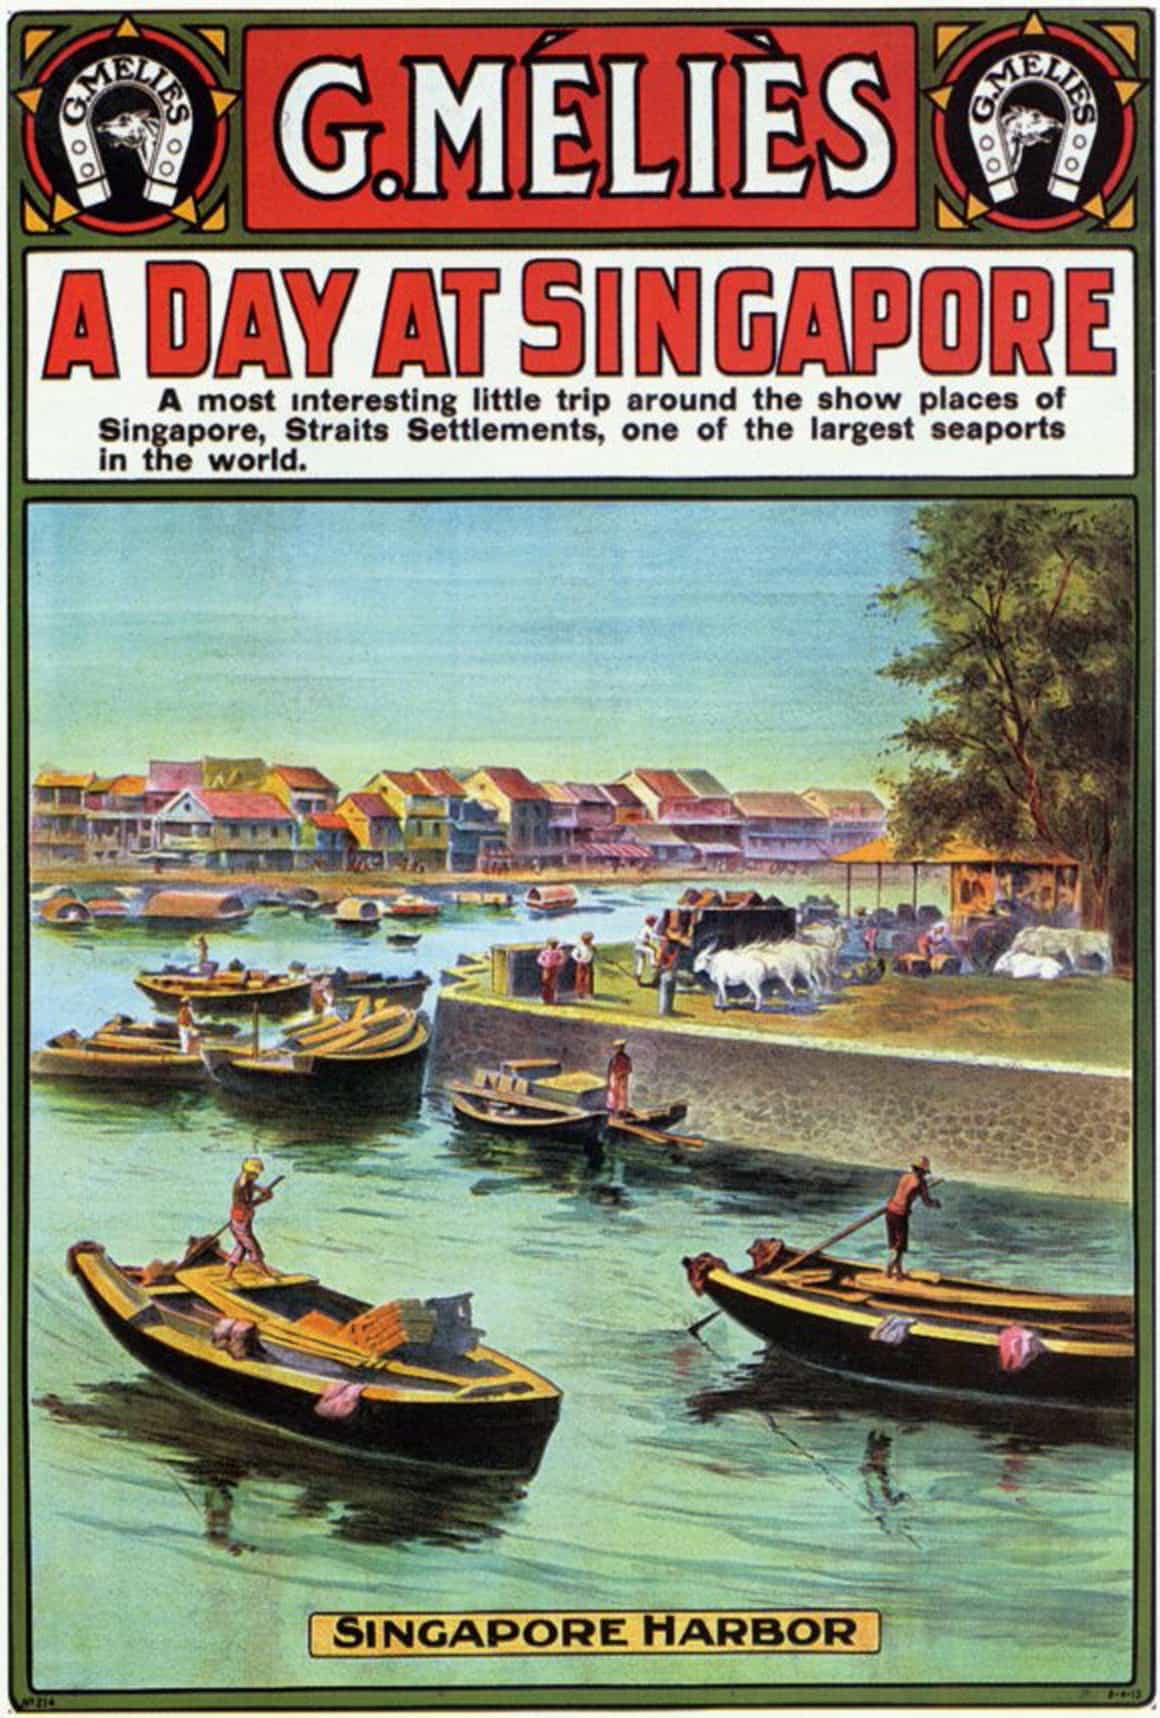 singapore tourism ads